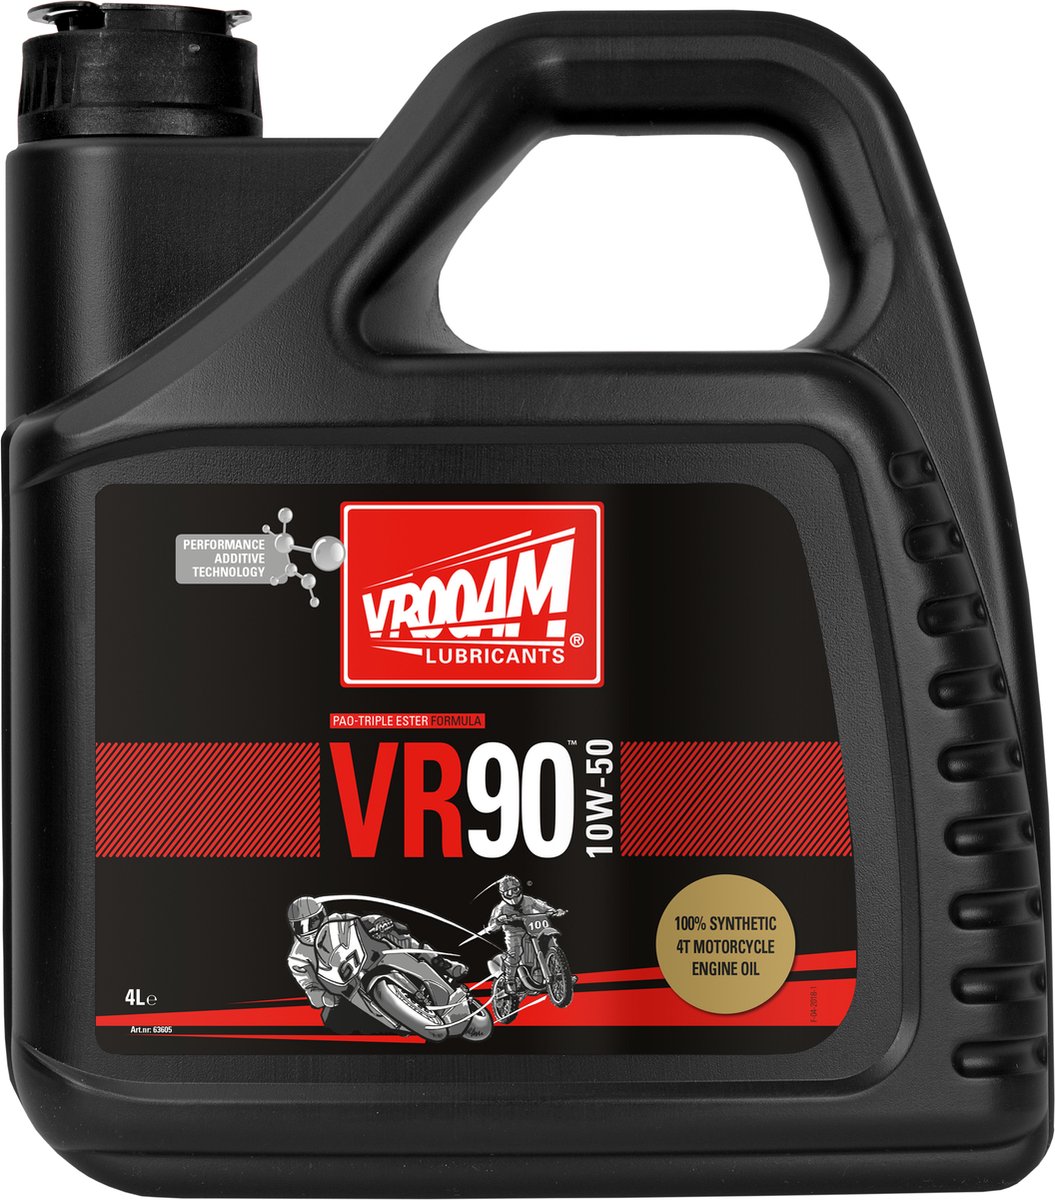 VROOAM VR90 ENGINE OIL 10W-50 4 L